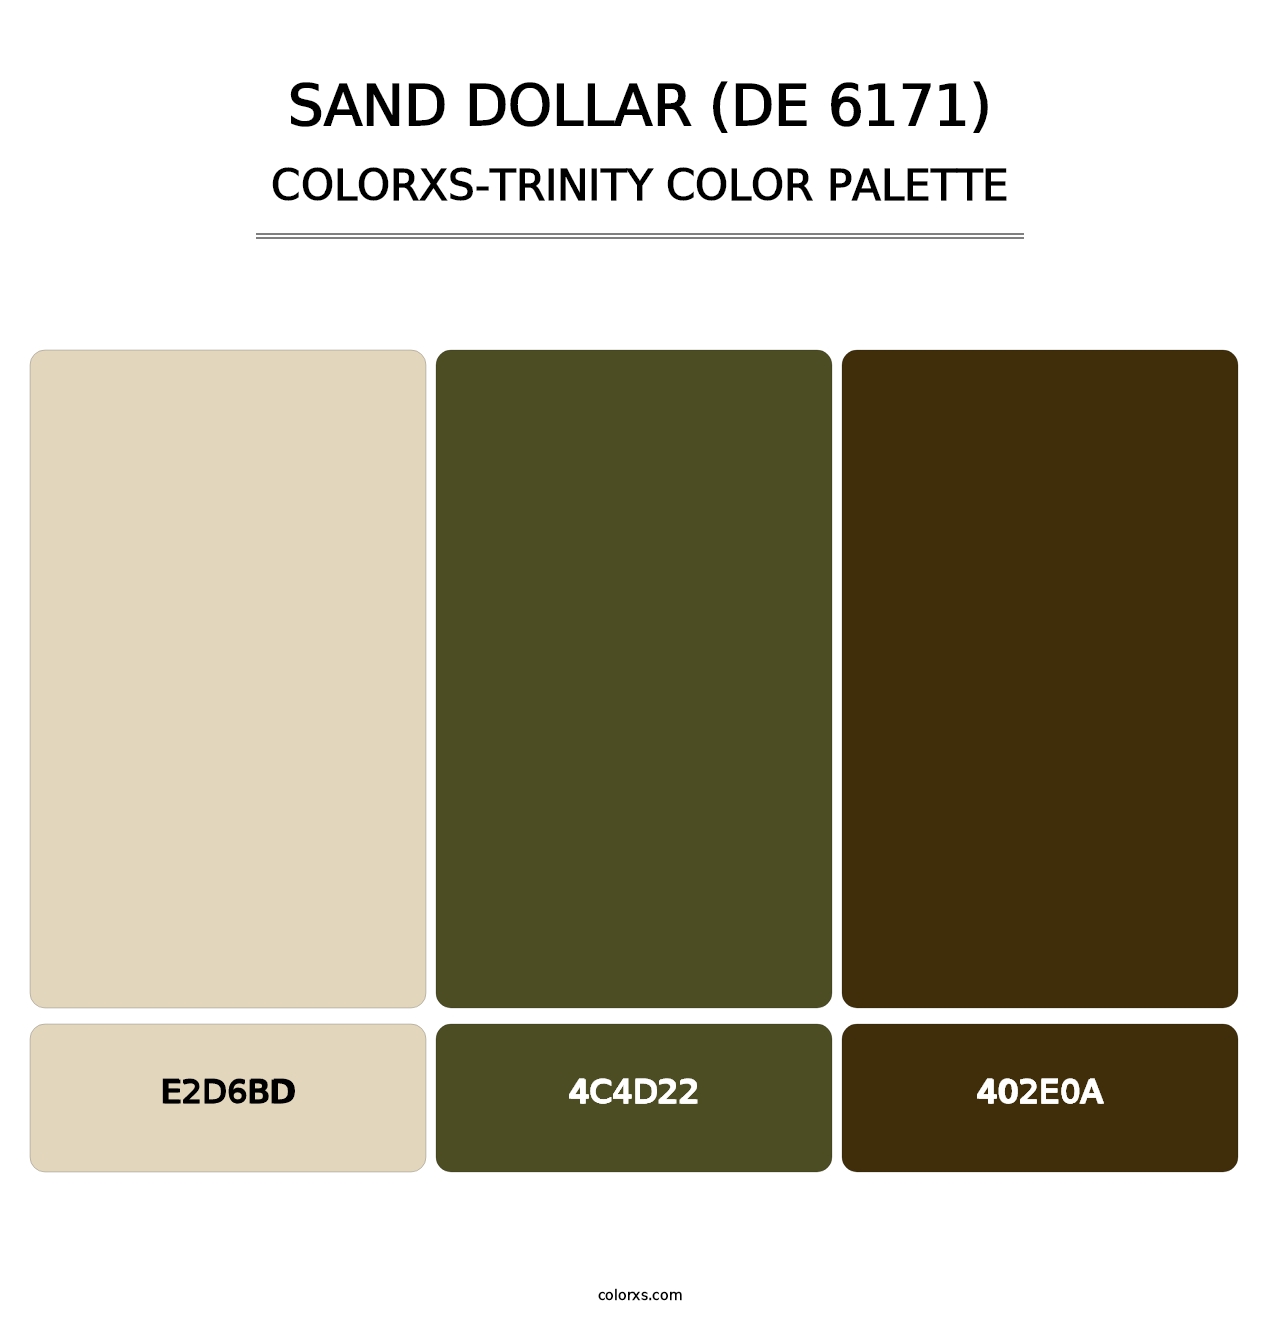 Sand Dollar (DE 6171) - Colorxs Trinity Palette